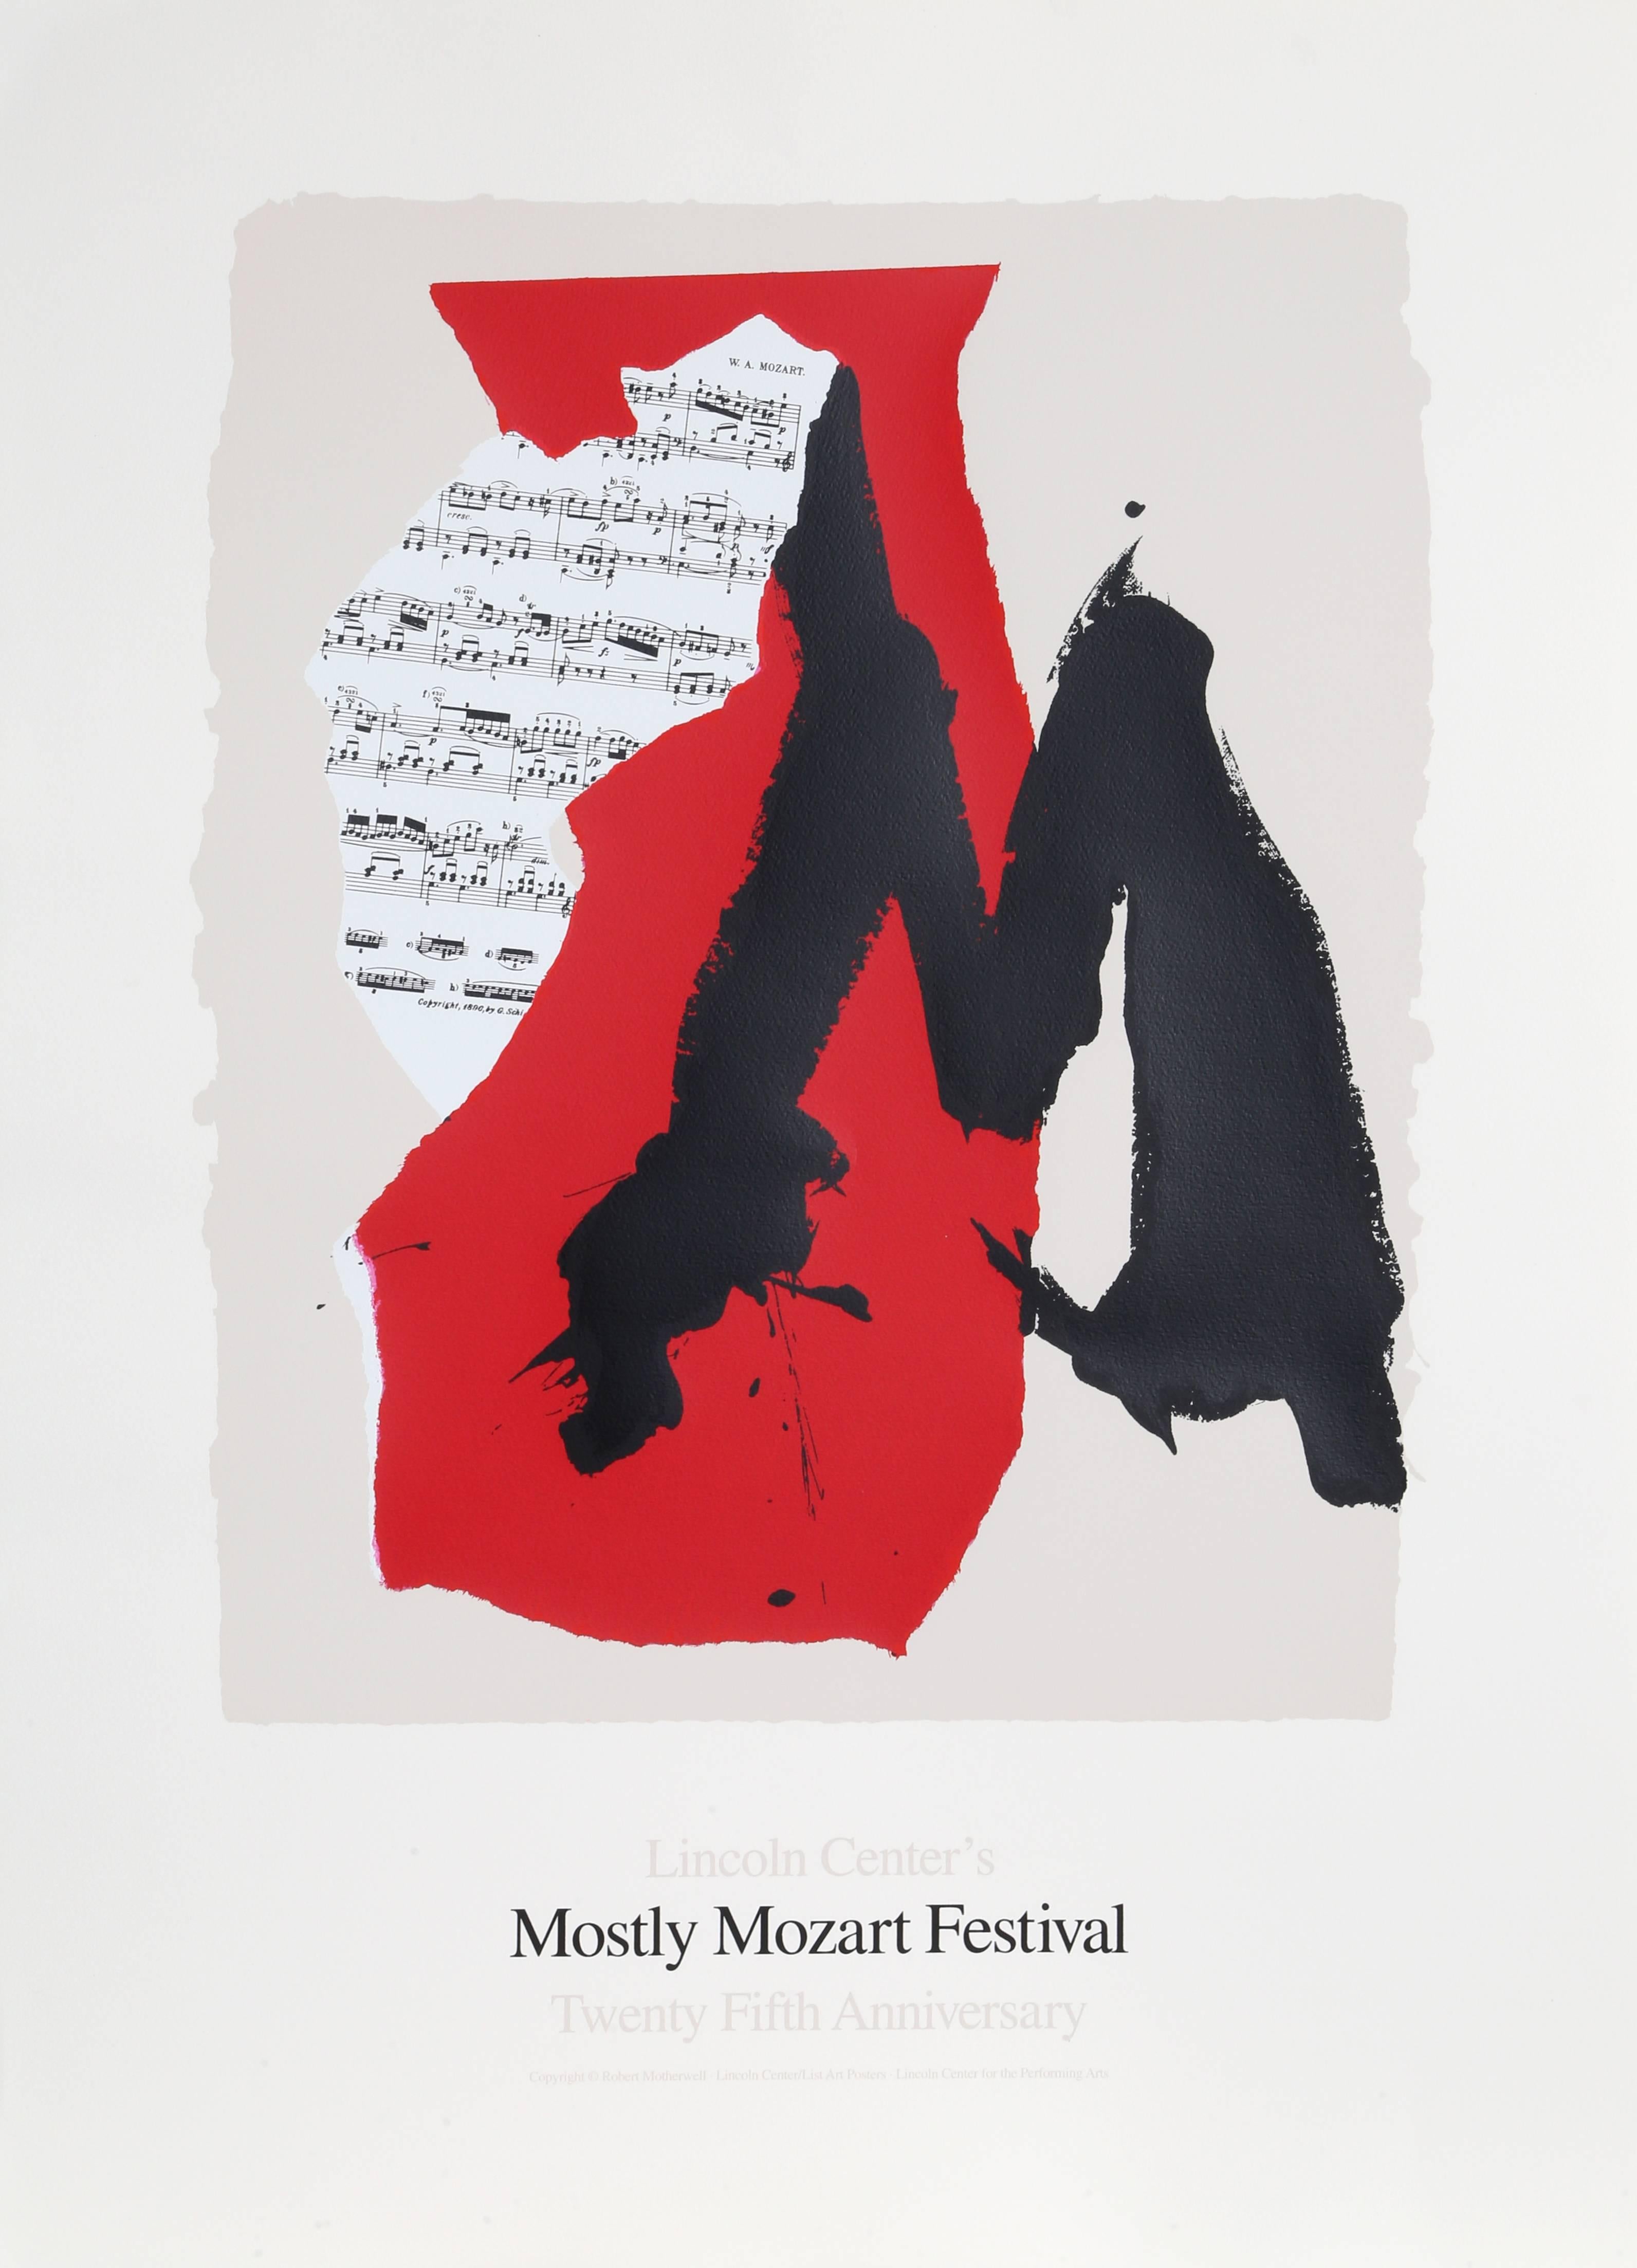 Artistics : Robert Motherwell, Américain (1915 - 1991)
Titre : Lincoln Center Mostly Mozart, 25e anniversaire
Année : 1991
Support : Lithographie et sérigraphie sur Coventry
Edition : 800 
Dimensions : 101,6 cm x 73,66 cm (40 in. x 29